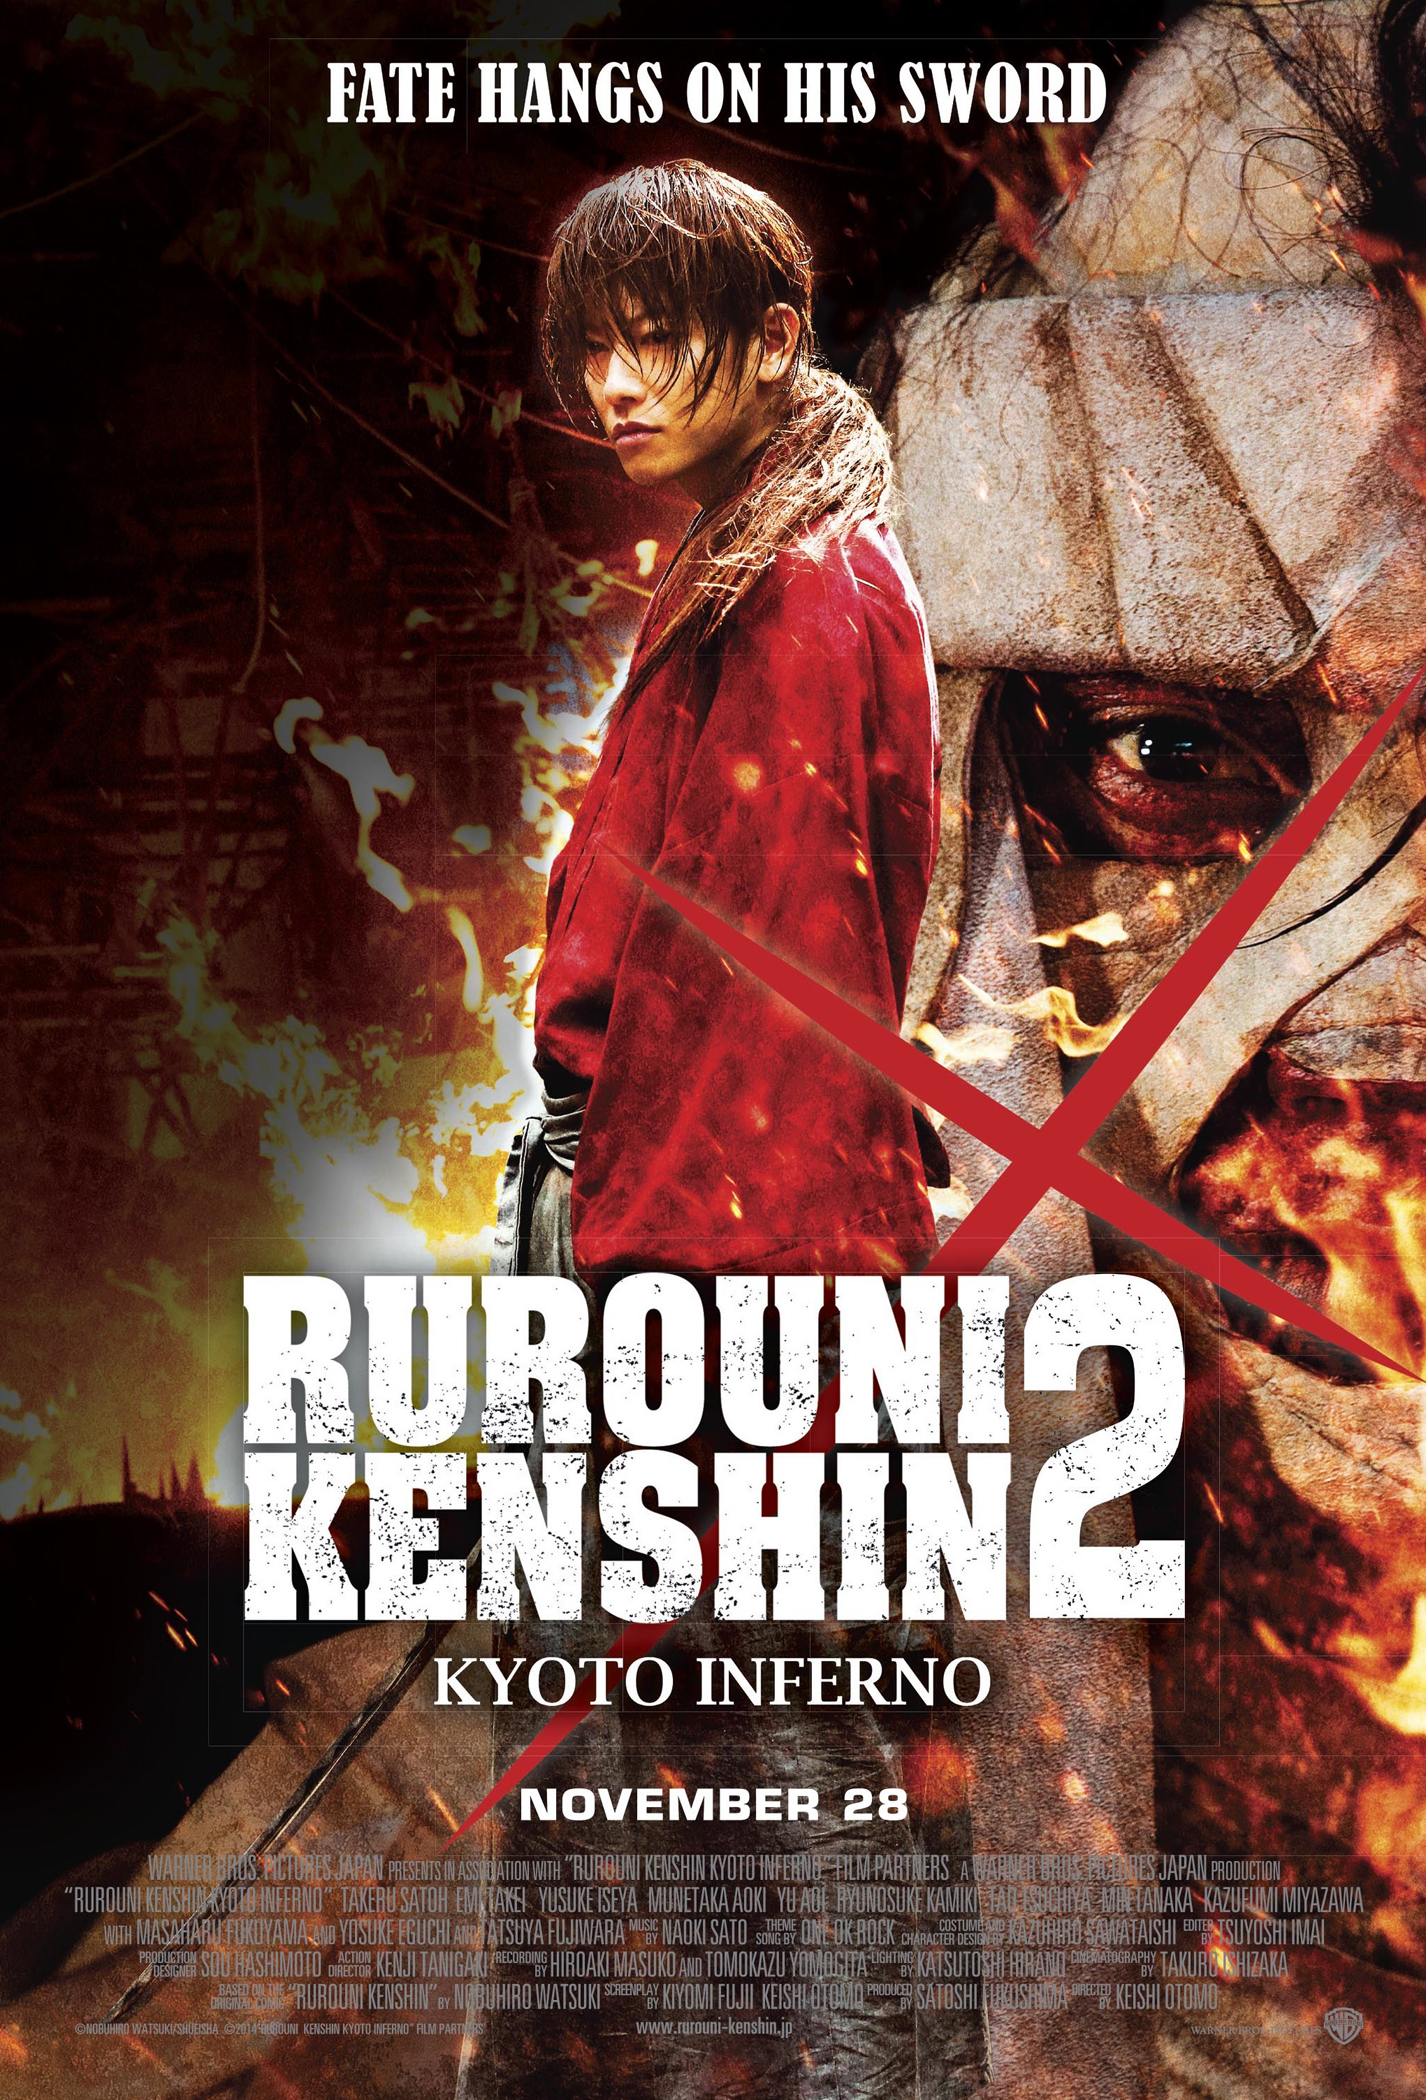 RUROUNI KENSHIN 2: KYOTO INFERNO Production Notes